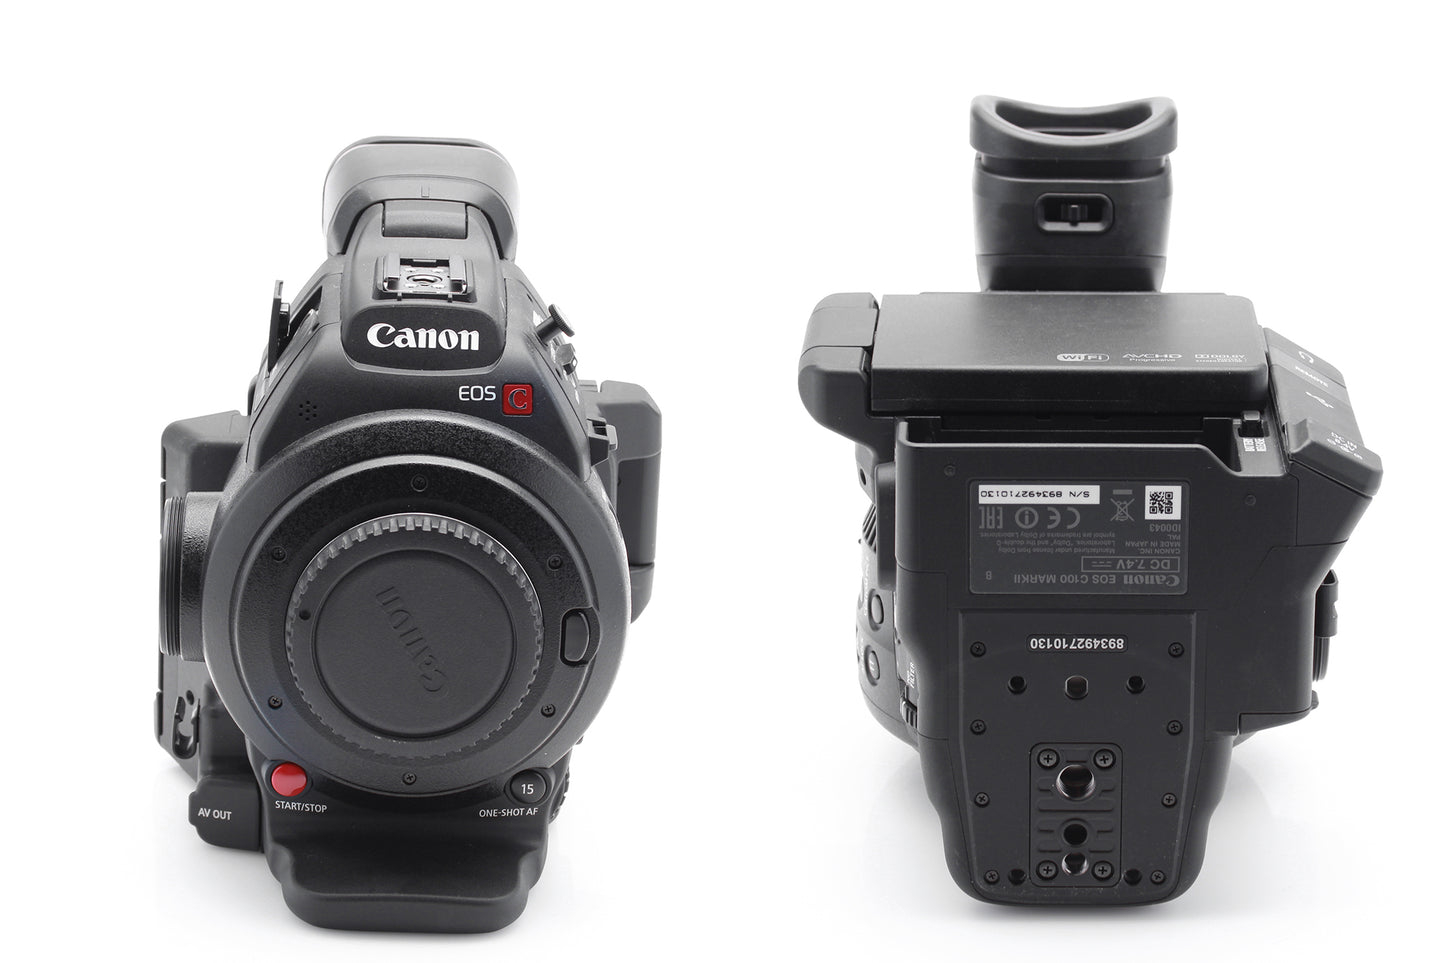 Used Canon EOS C100 Mark II